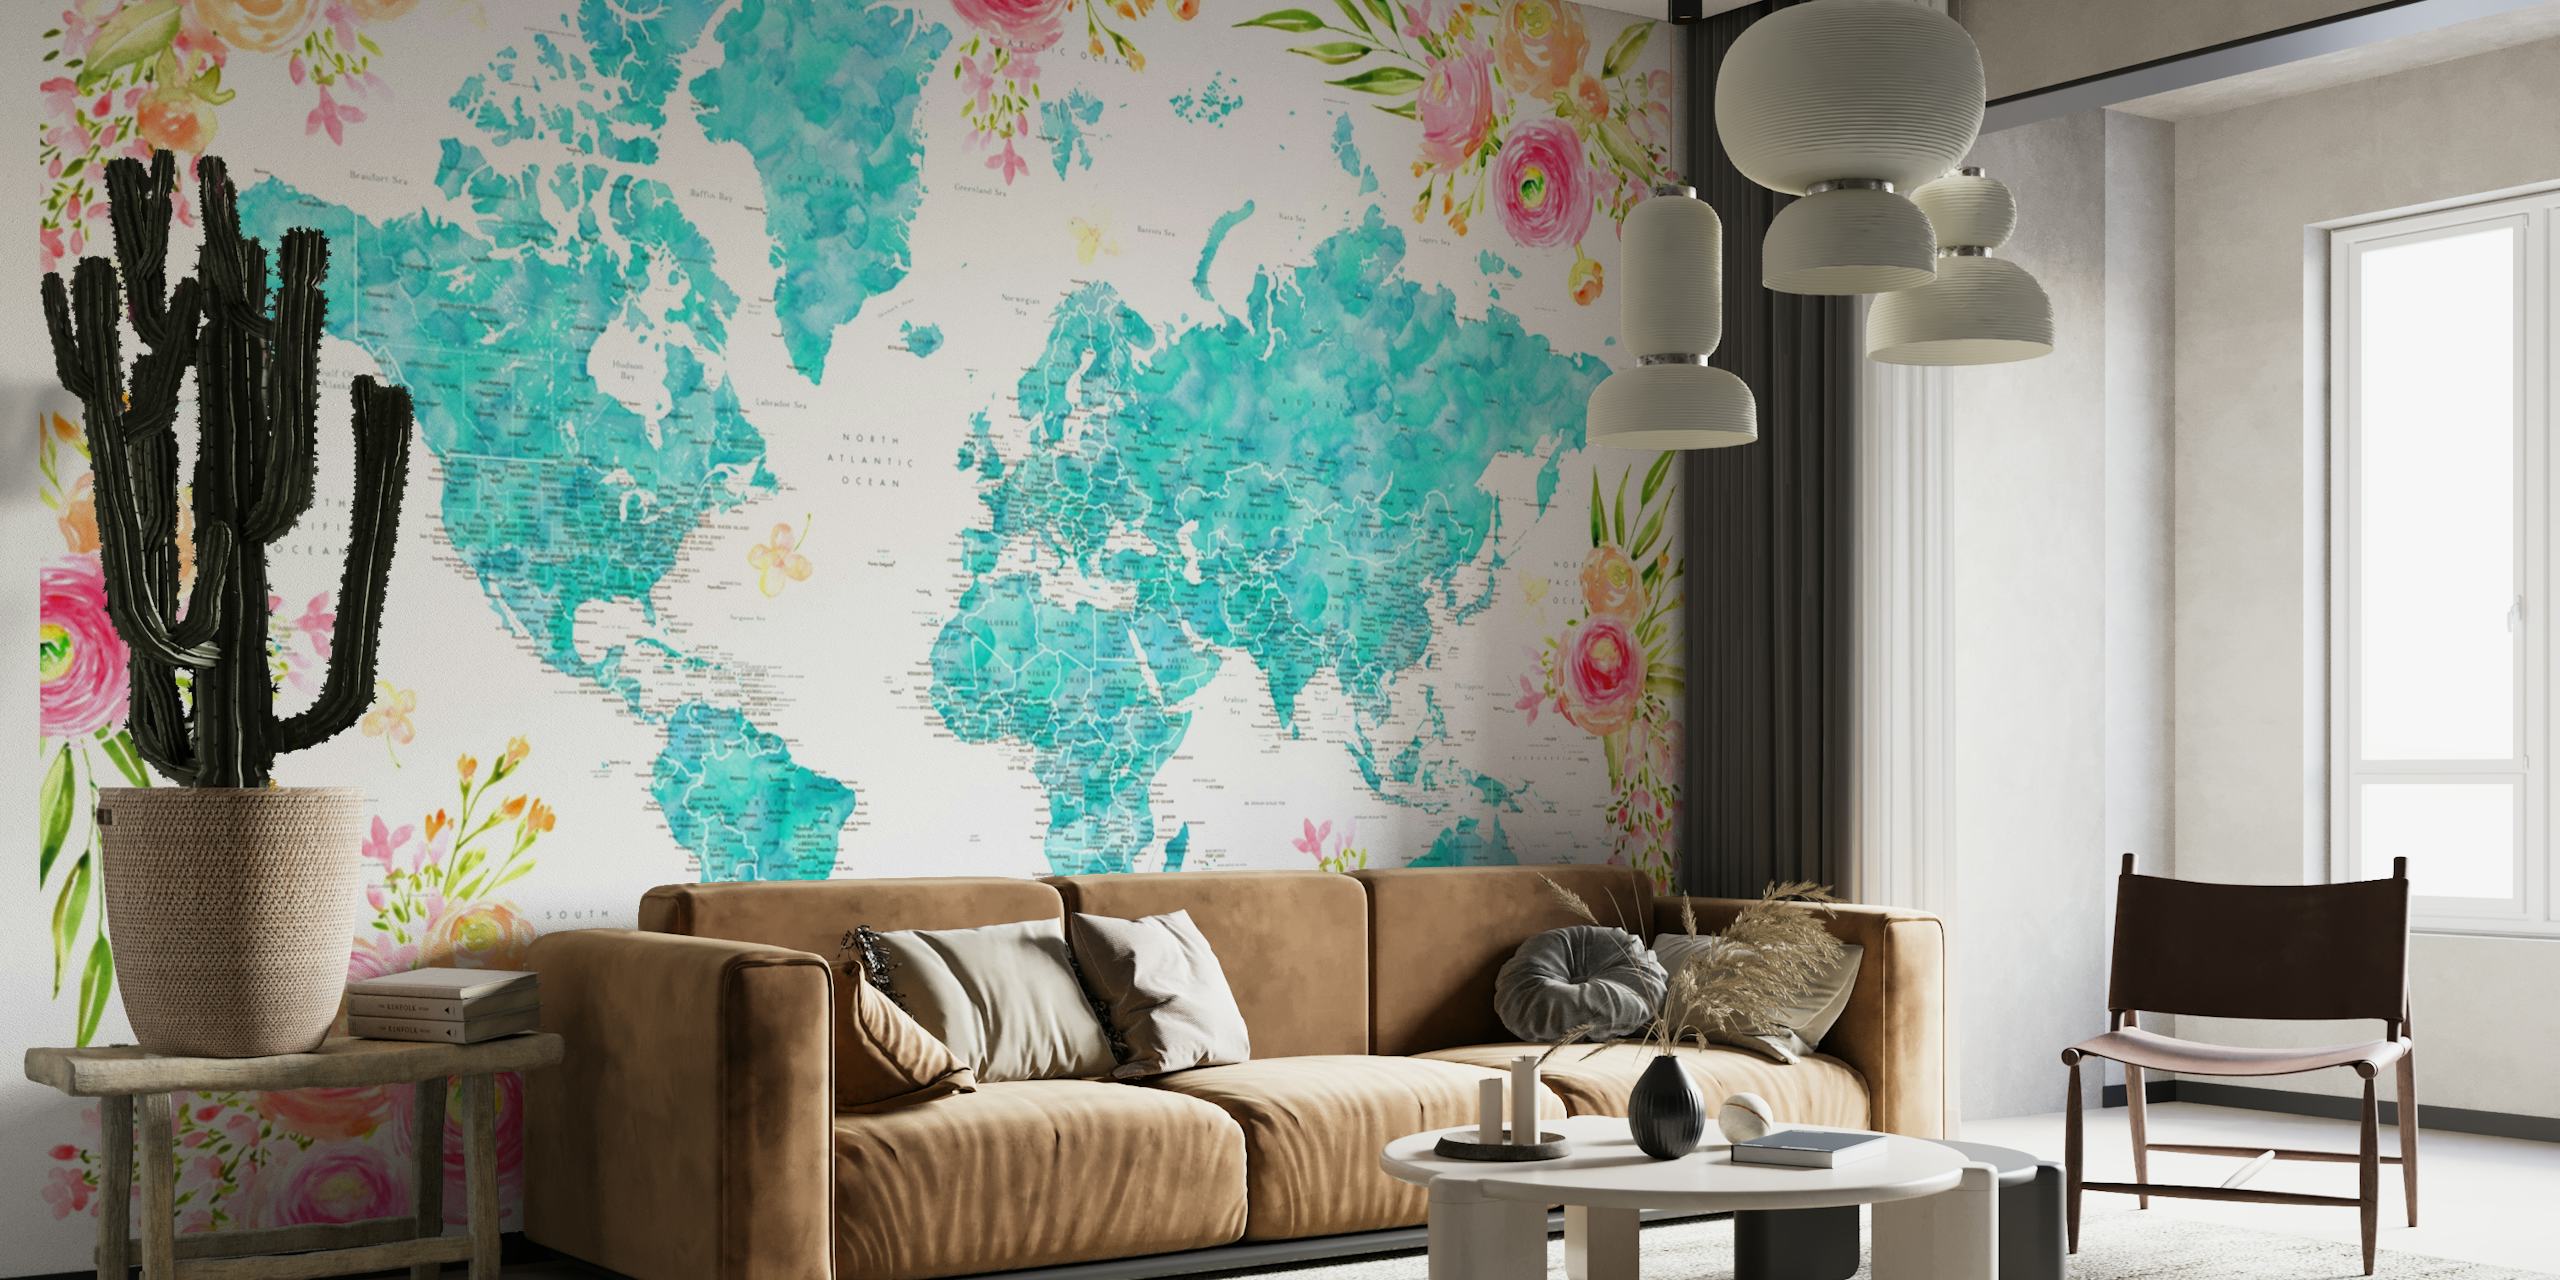 Yksityiskohtainen maailmankartta, jossa on turkoosin ja pastellin sävyisiä kukkareunuksia seinämaalauksessa.